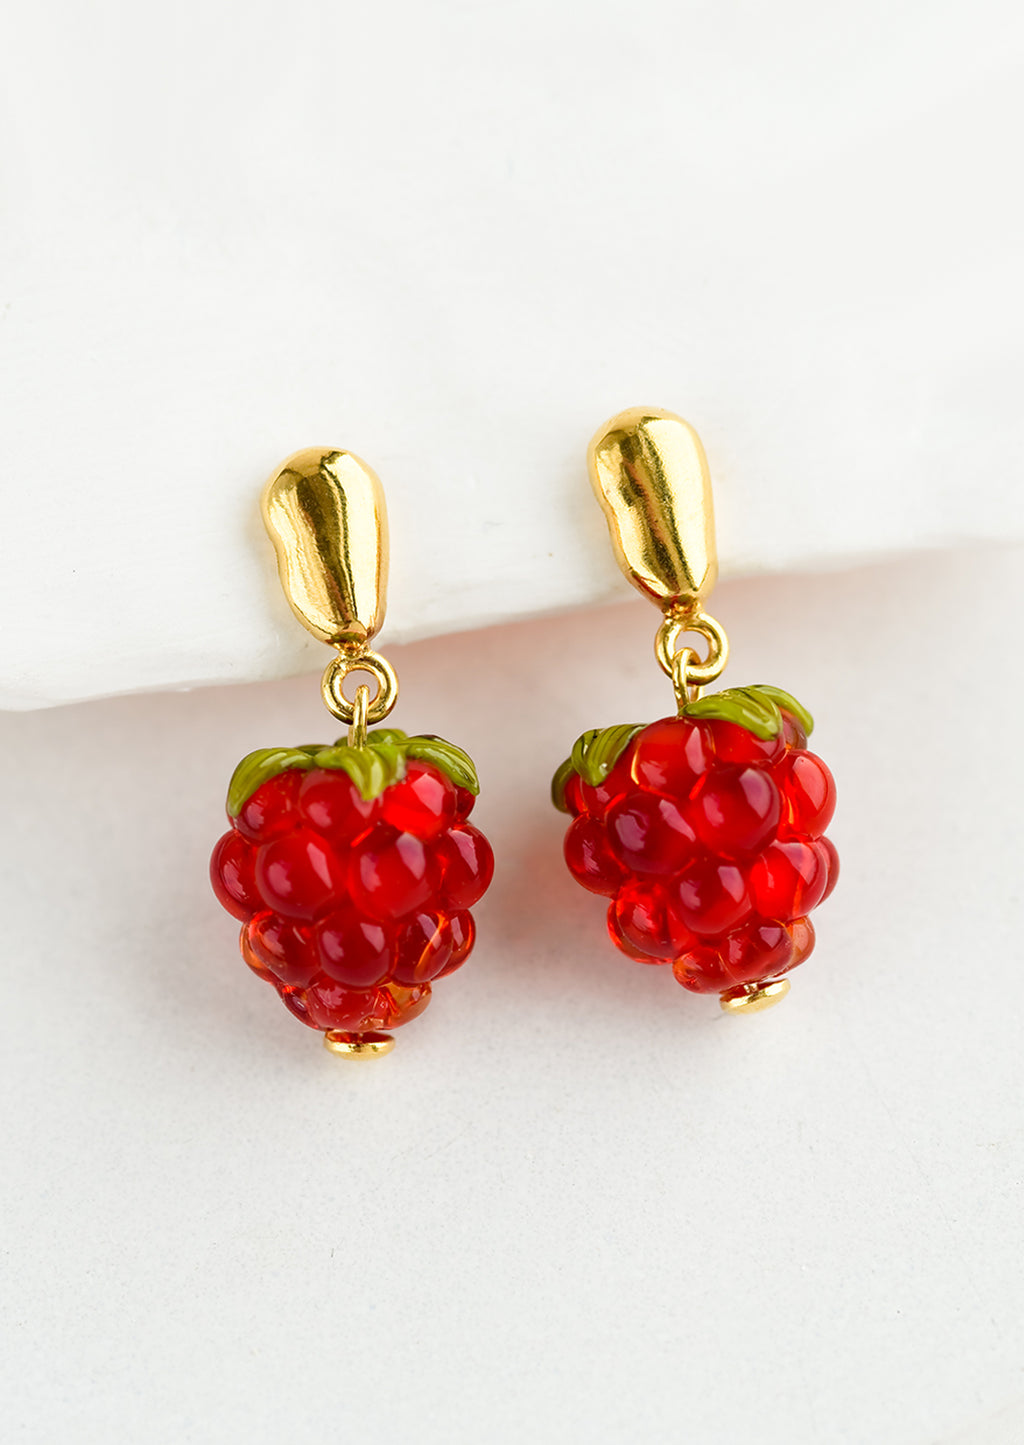 1: A pair of glass earrings in shape of raspberries.